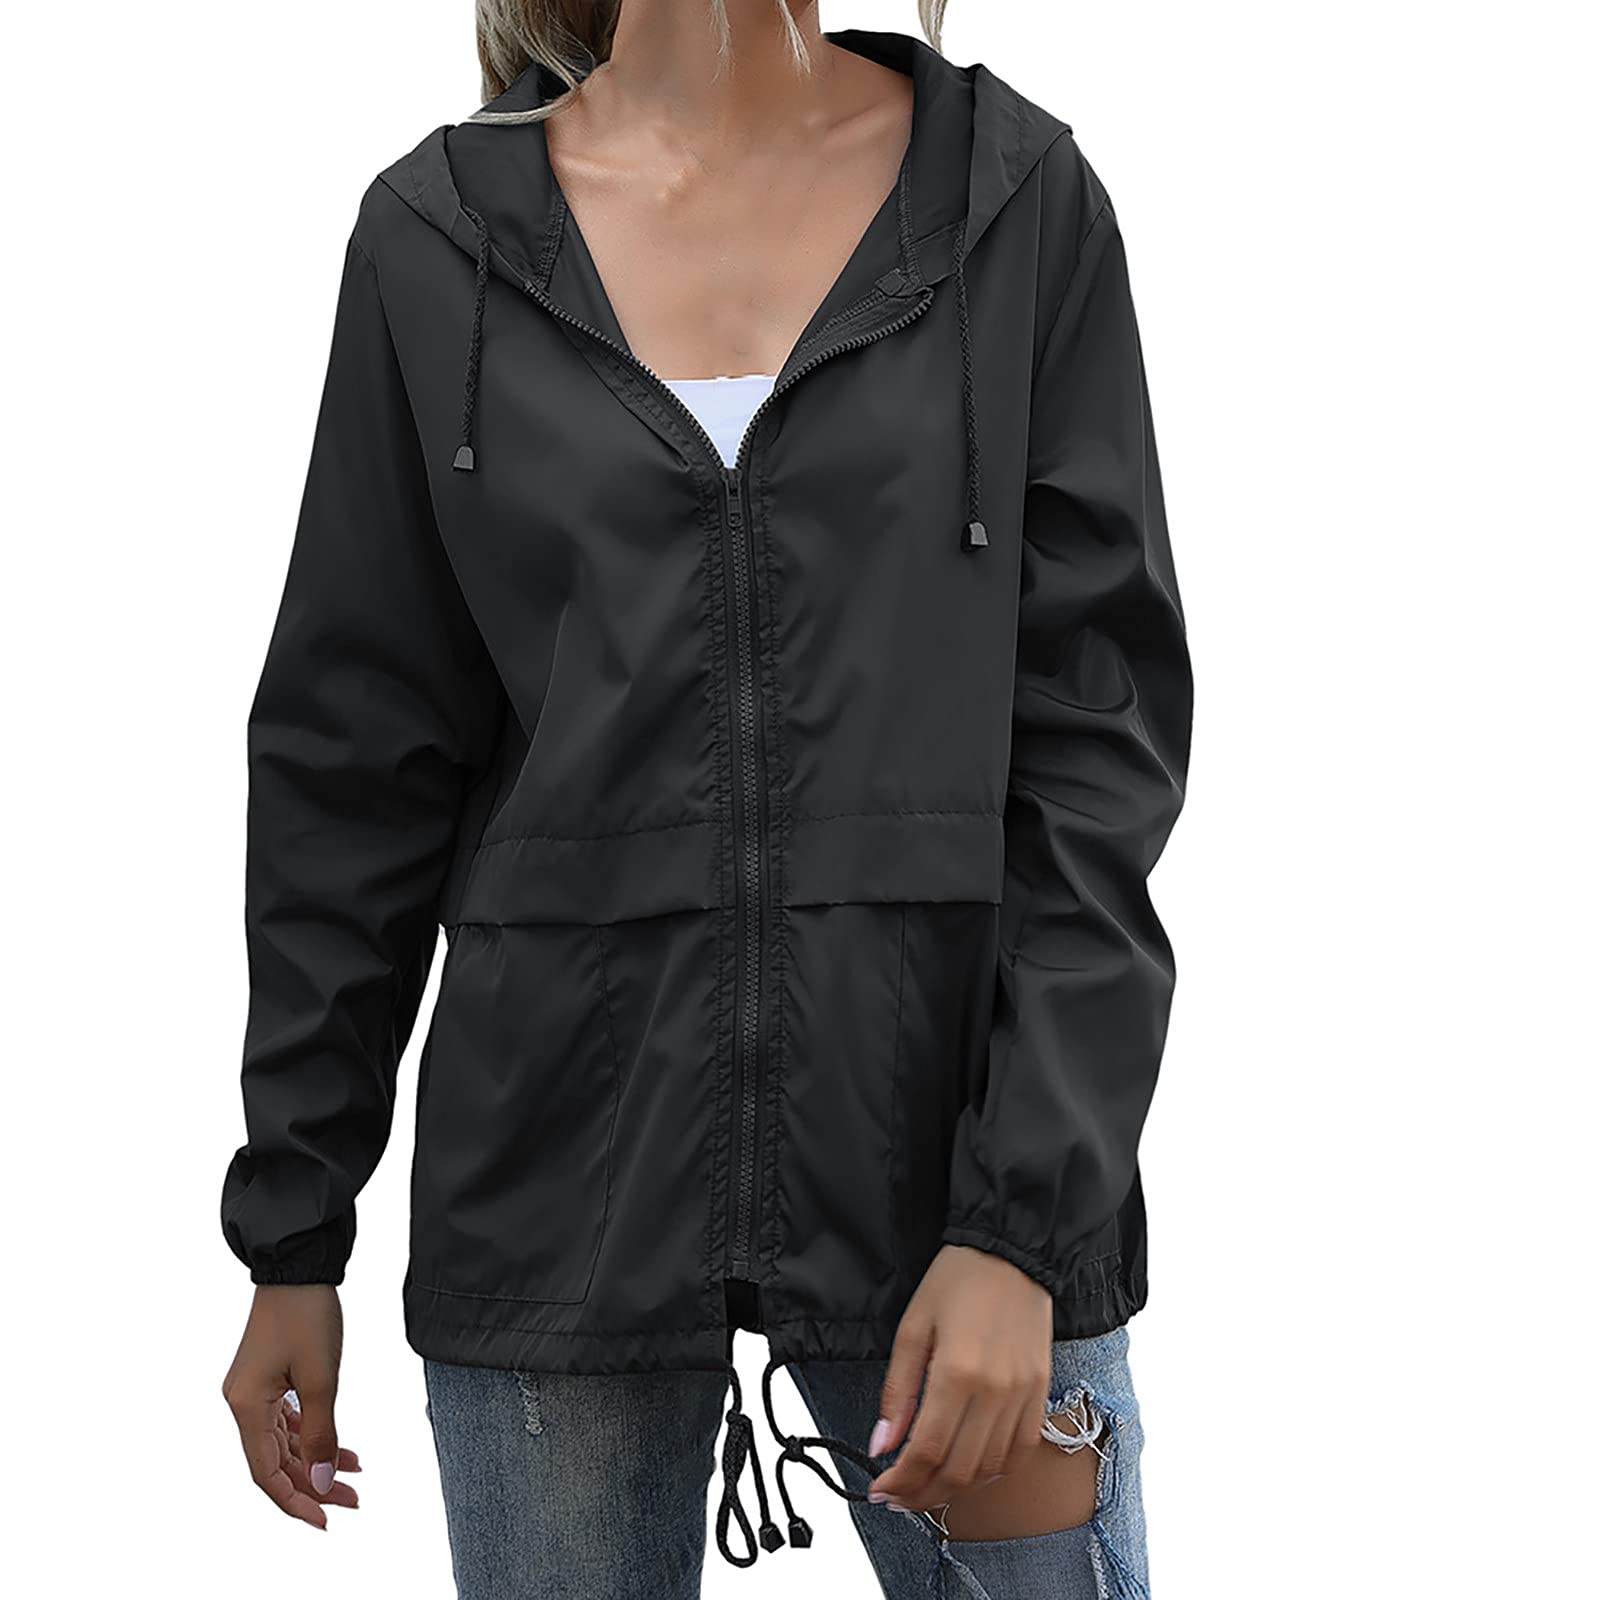 Waterproof Hoodie with Zipper Women's Windbreaker Jacket